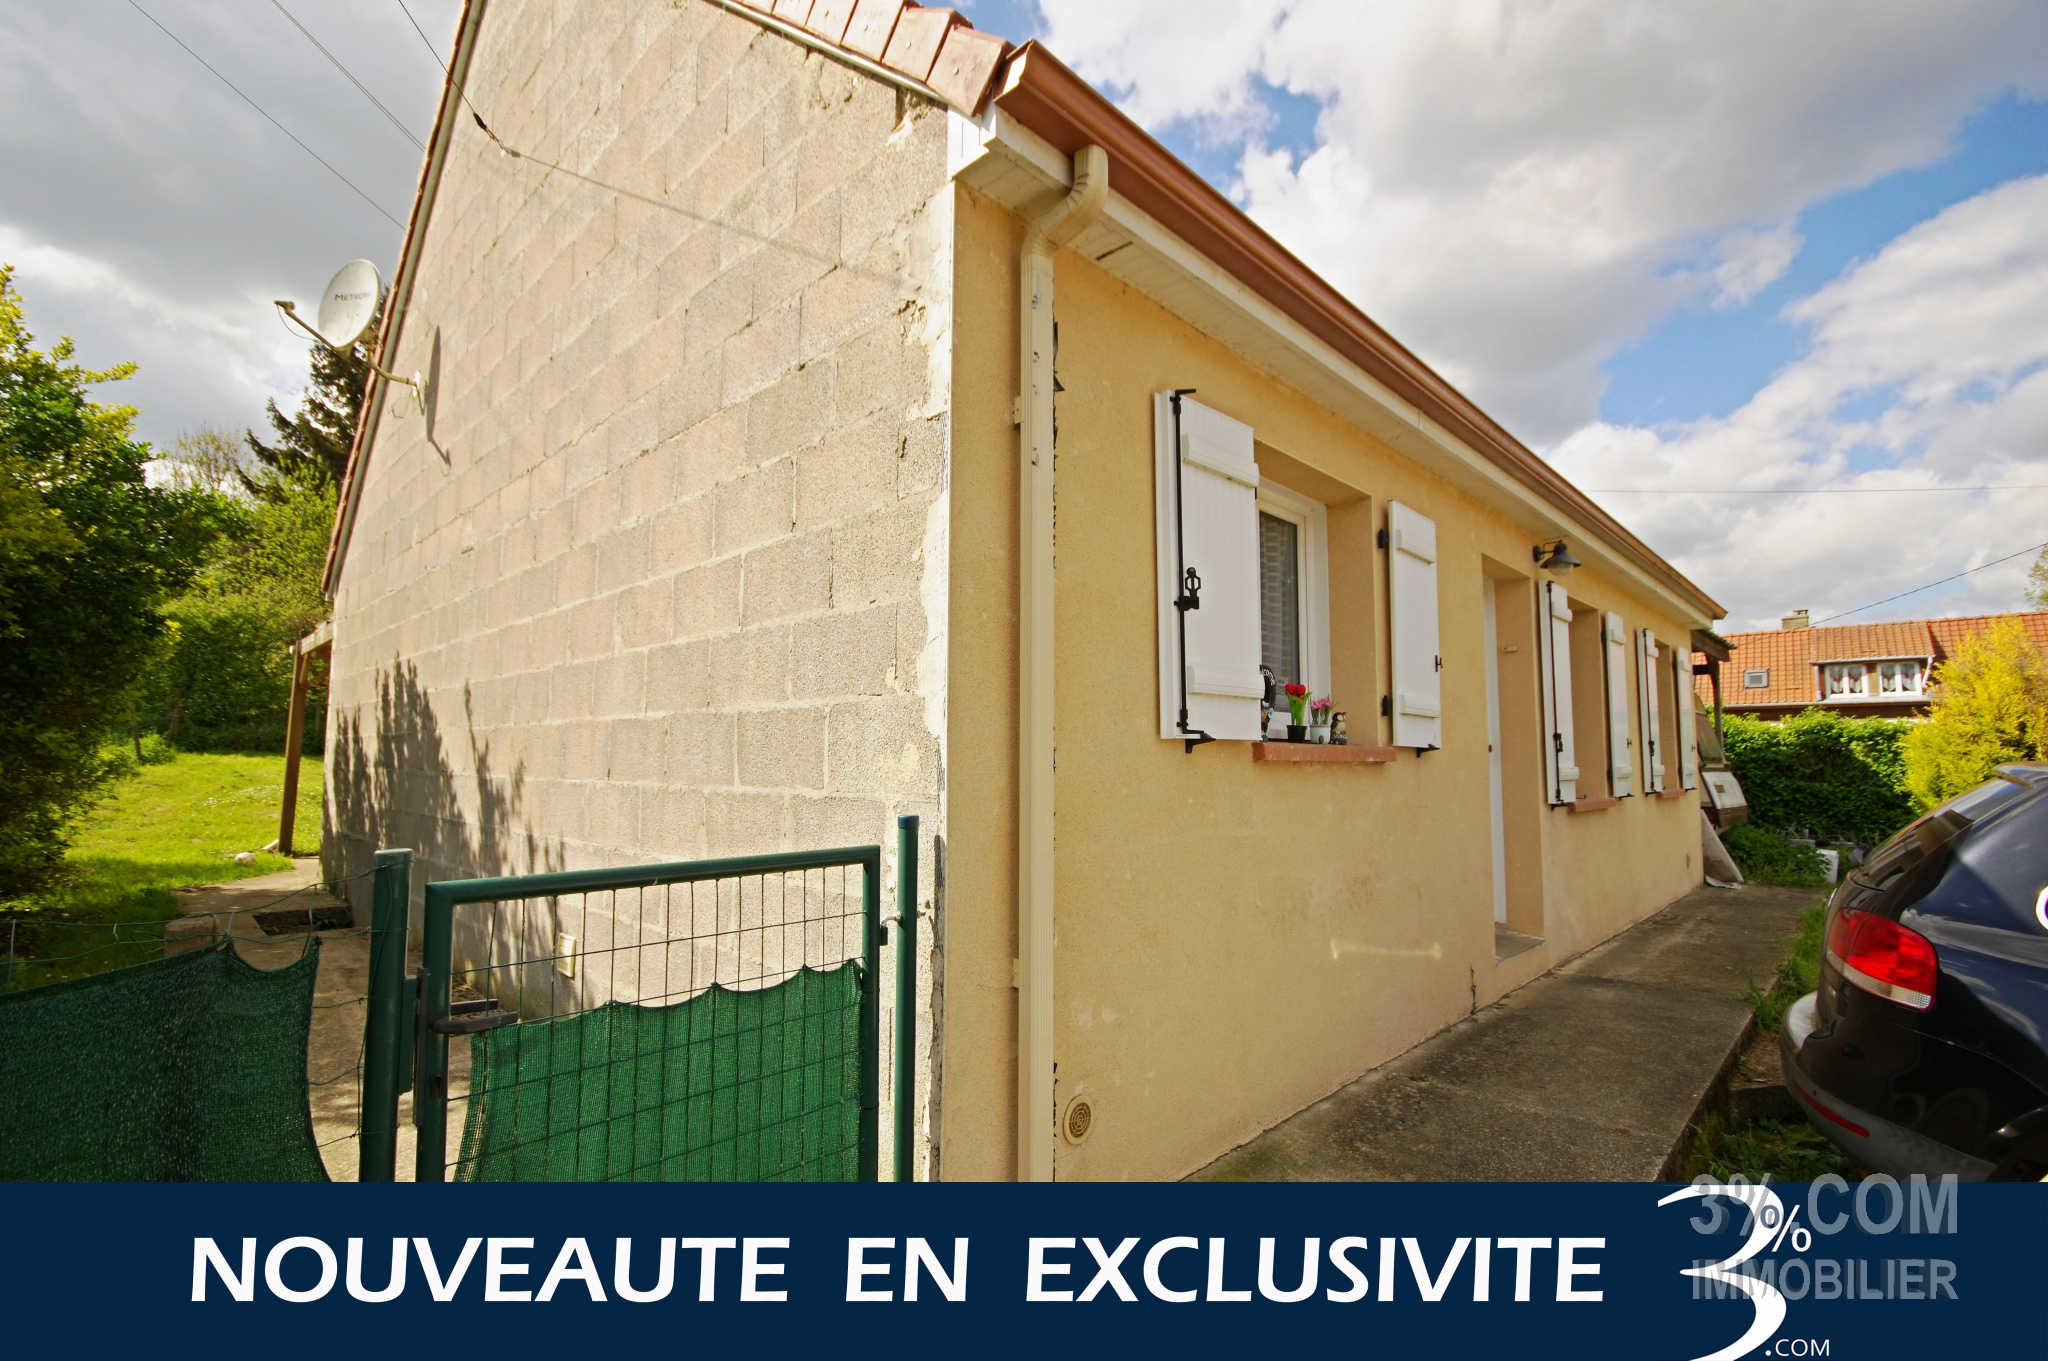 Vente Maison 73m² 4 Pièces à Domart-en-Ponthieu (80620) - 3%.Com